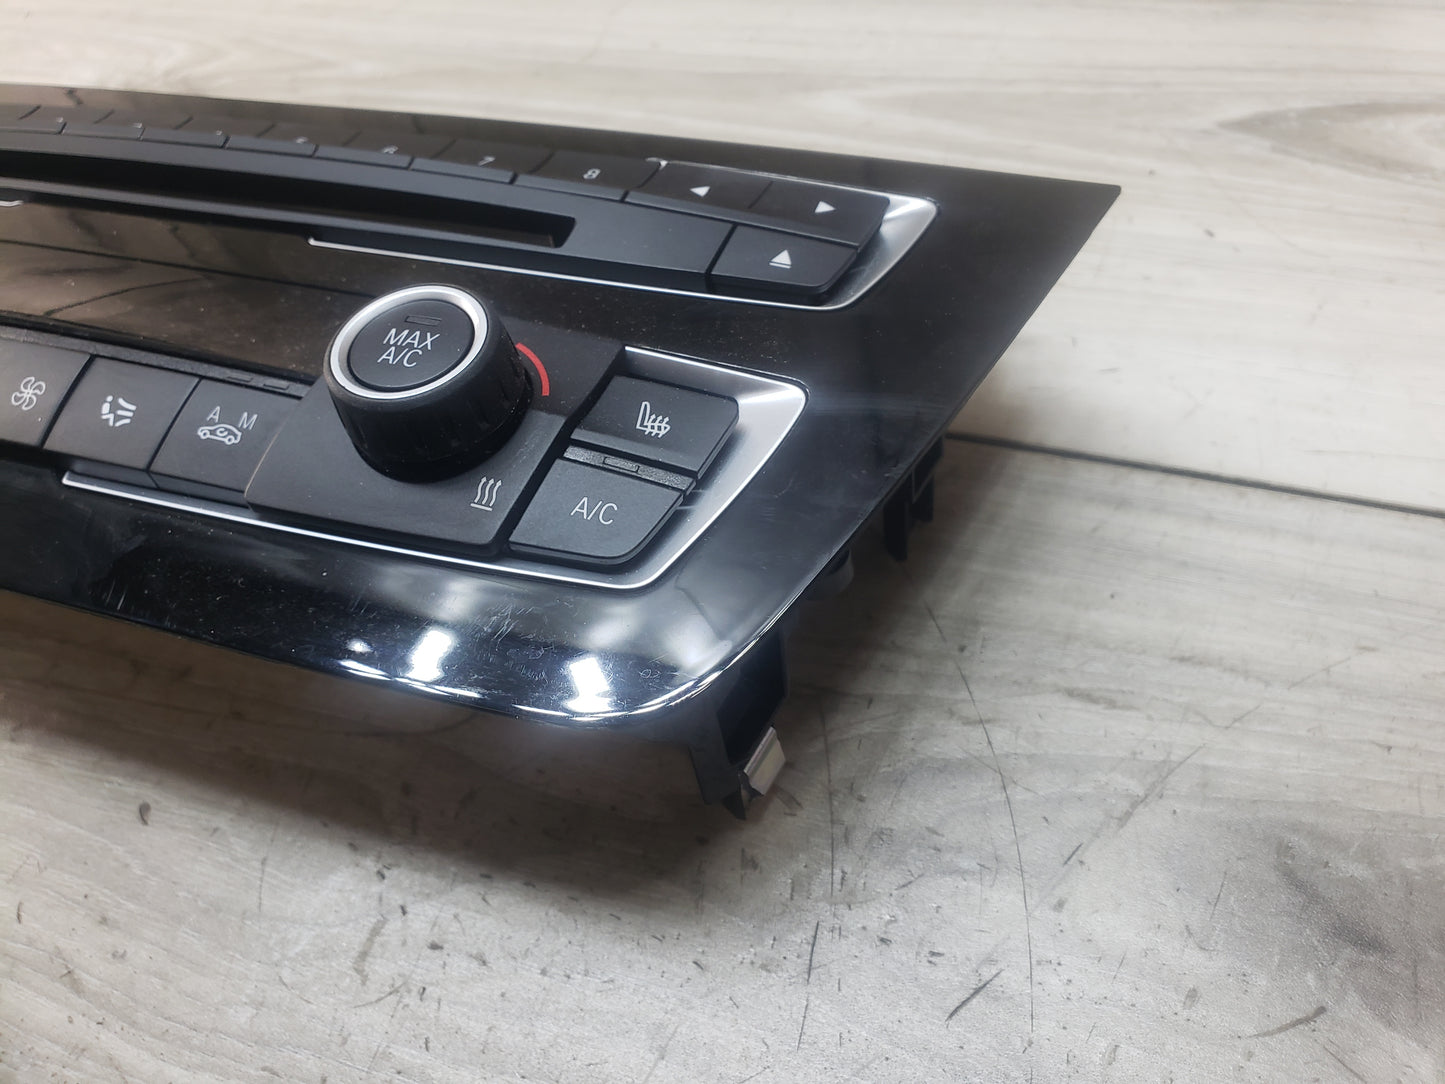 12-18 OEM BMW F80 F30 F32 F36 M3 M4 AC Heater Control Panel Radio Media Buttons